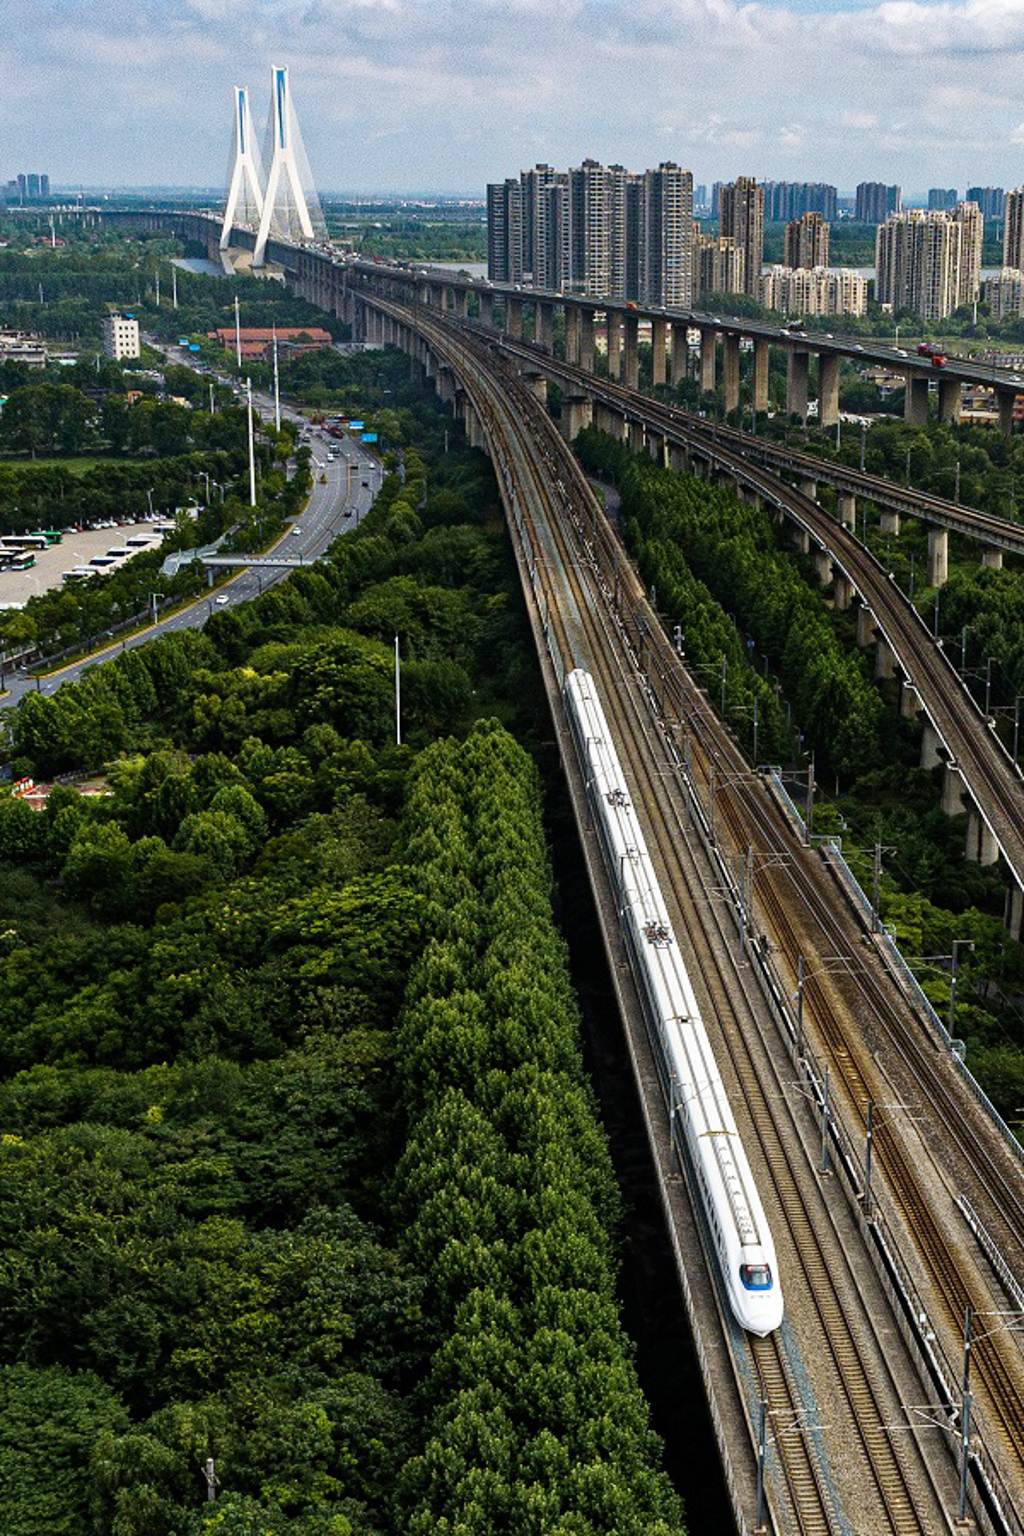 中国将再刷新纪录 新建包海高铁 全长2300公里